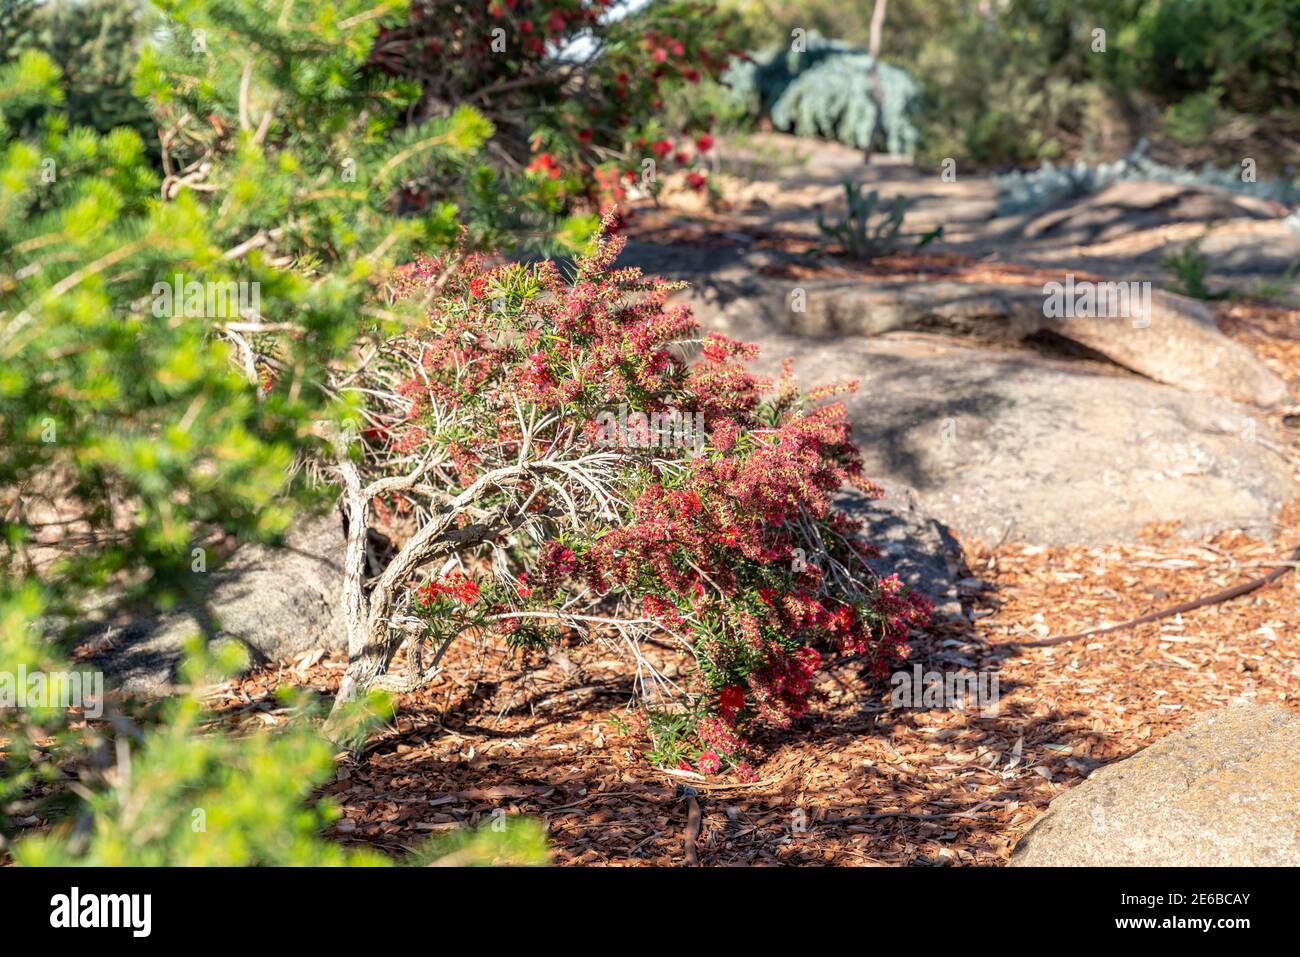 Callistemon, Bottlebrush shrubs in a Landscaped Australian Native Plant Garden Stock Photo